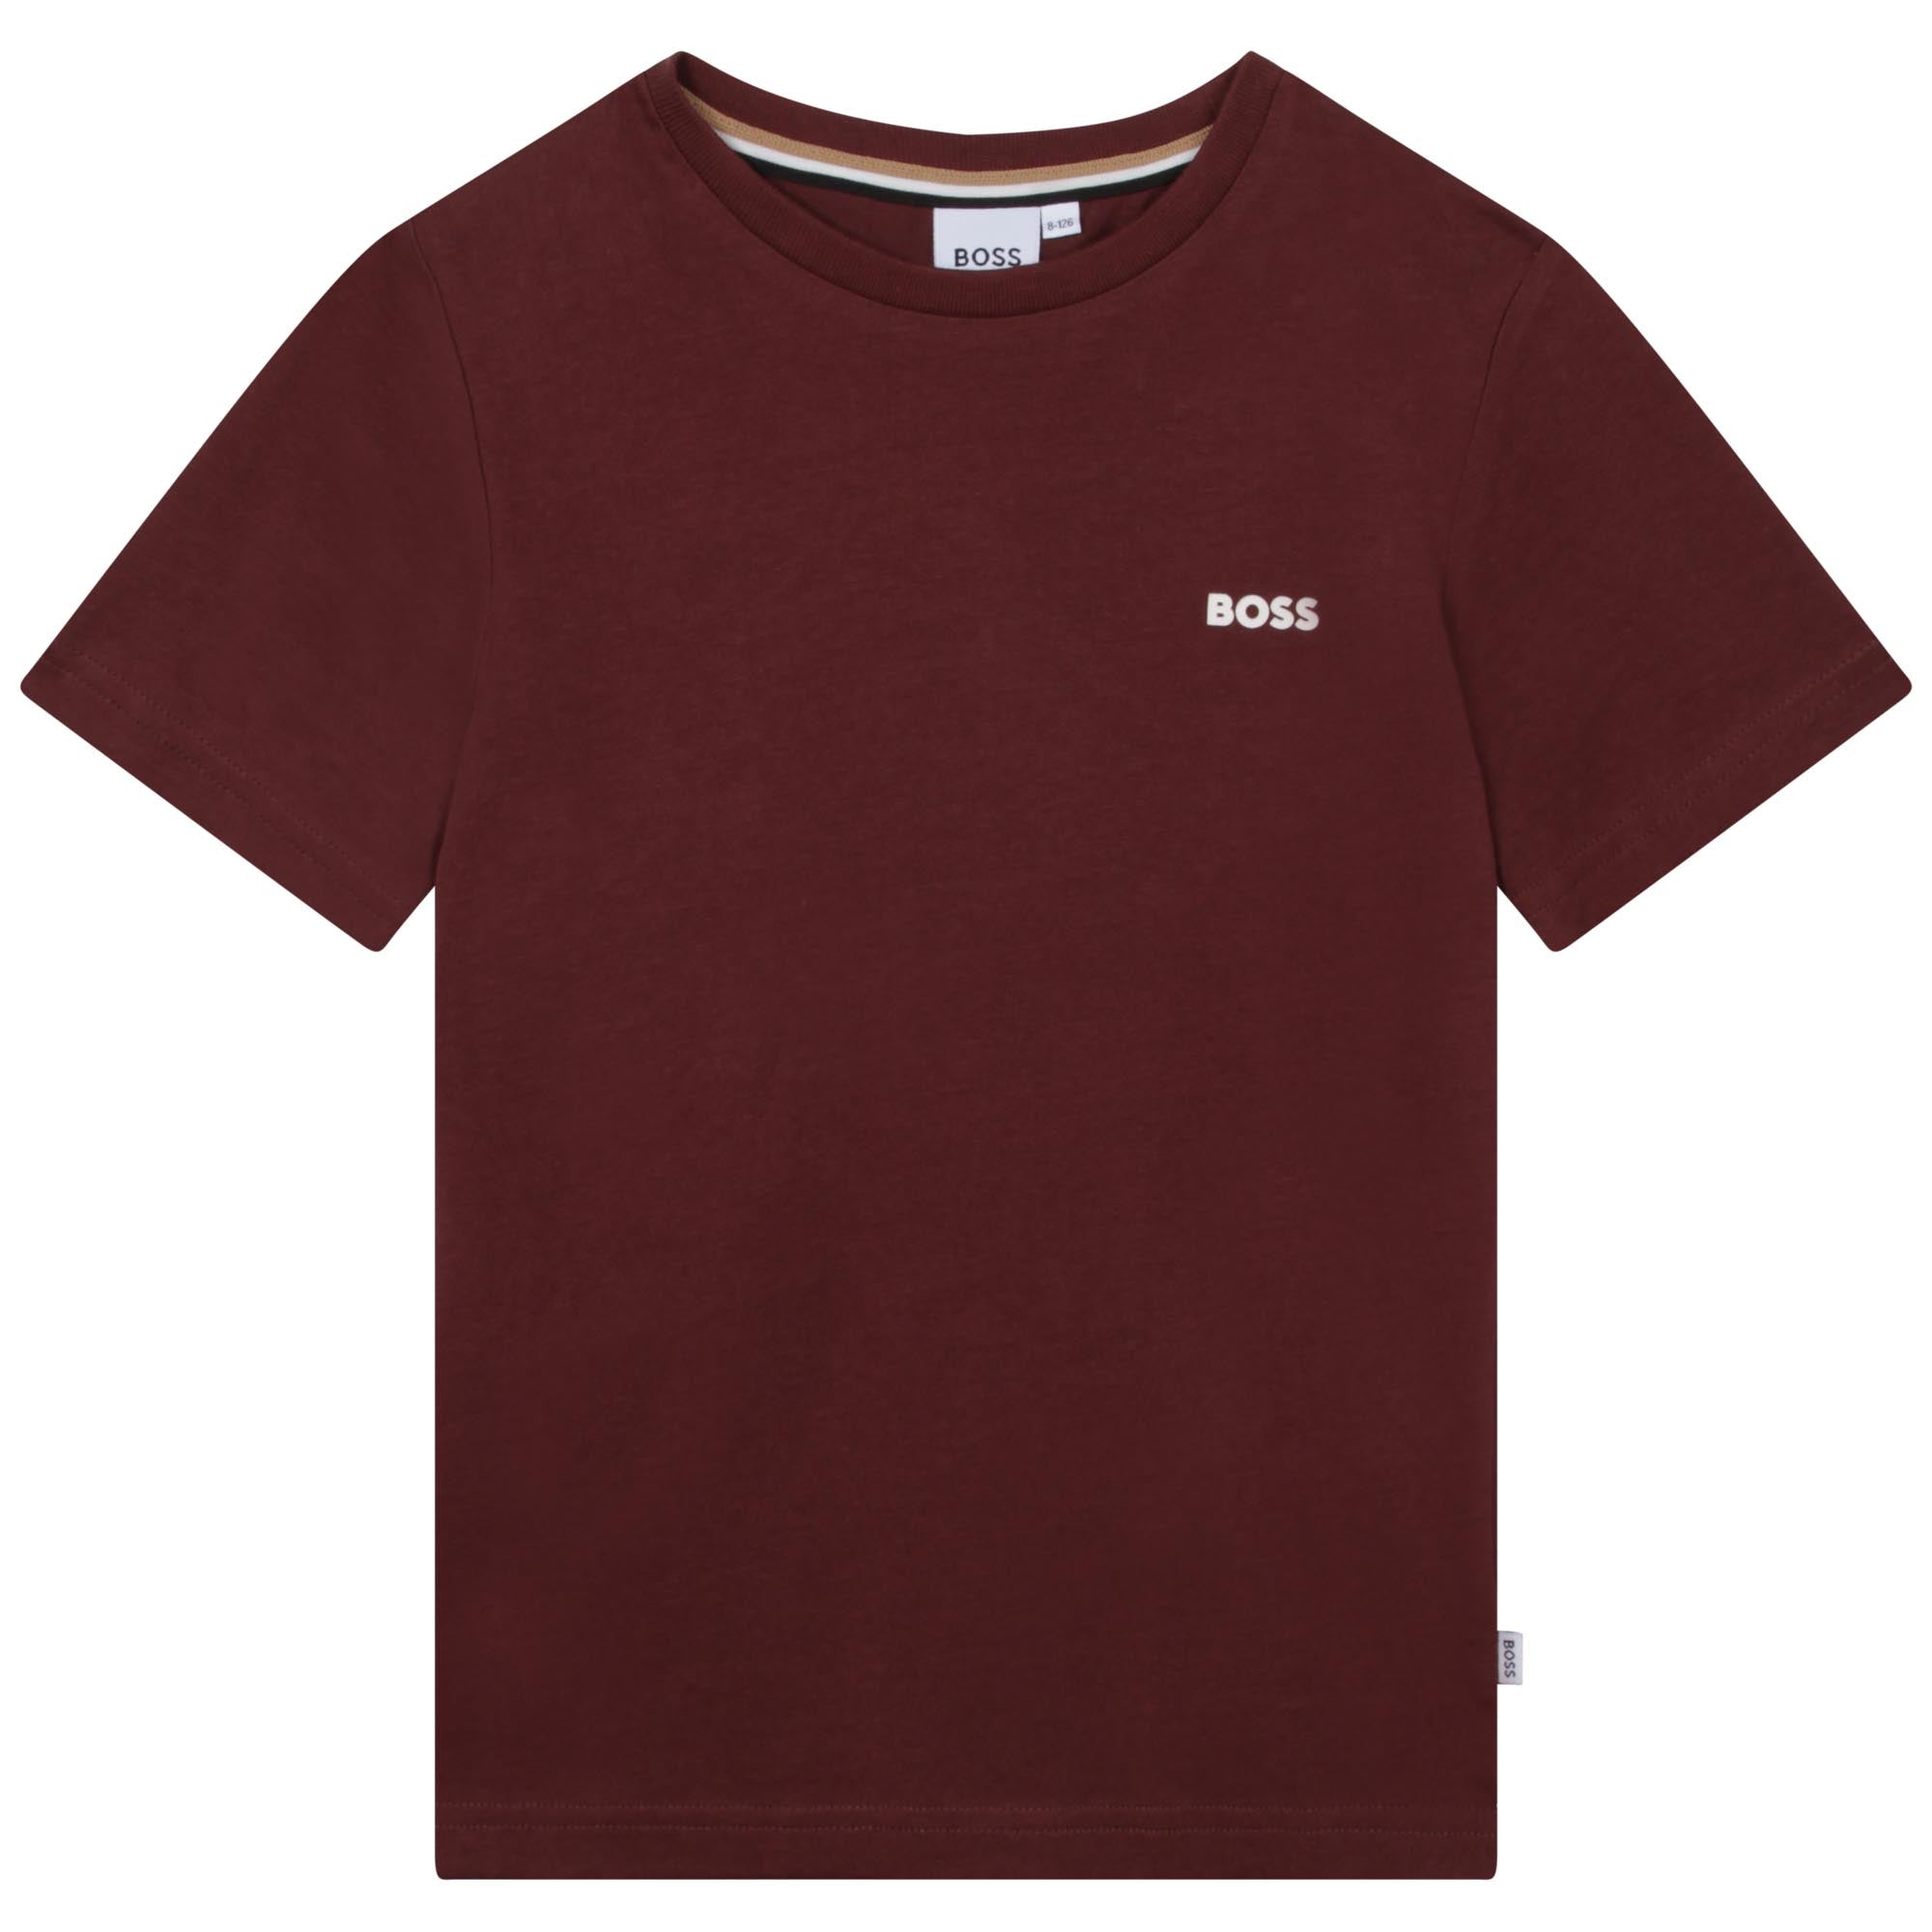 Boys Dark Red Cotton T-Shirt